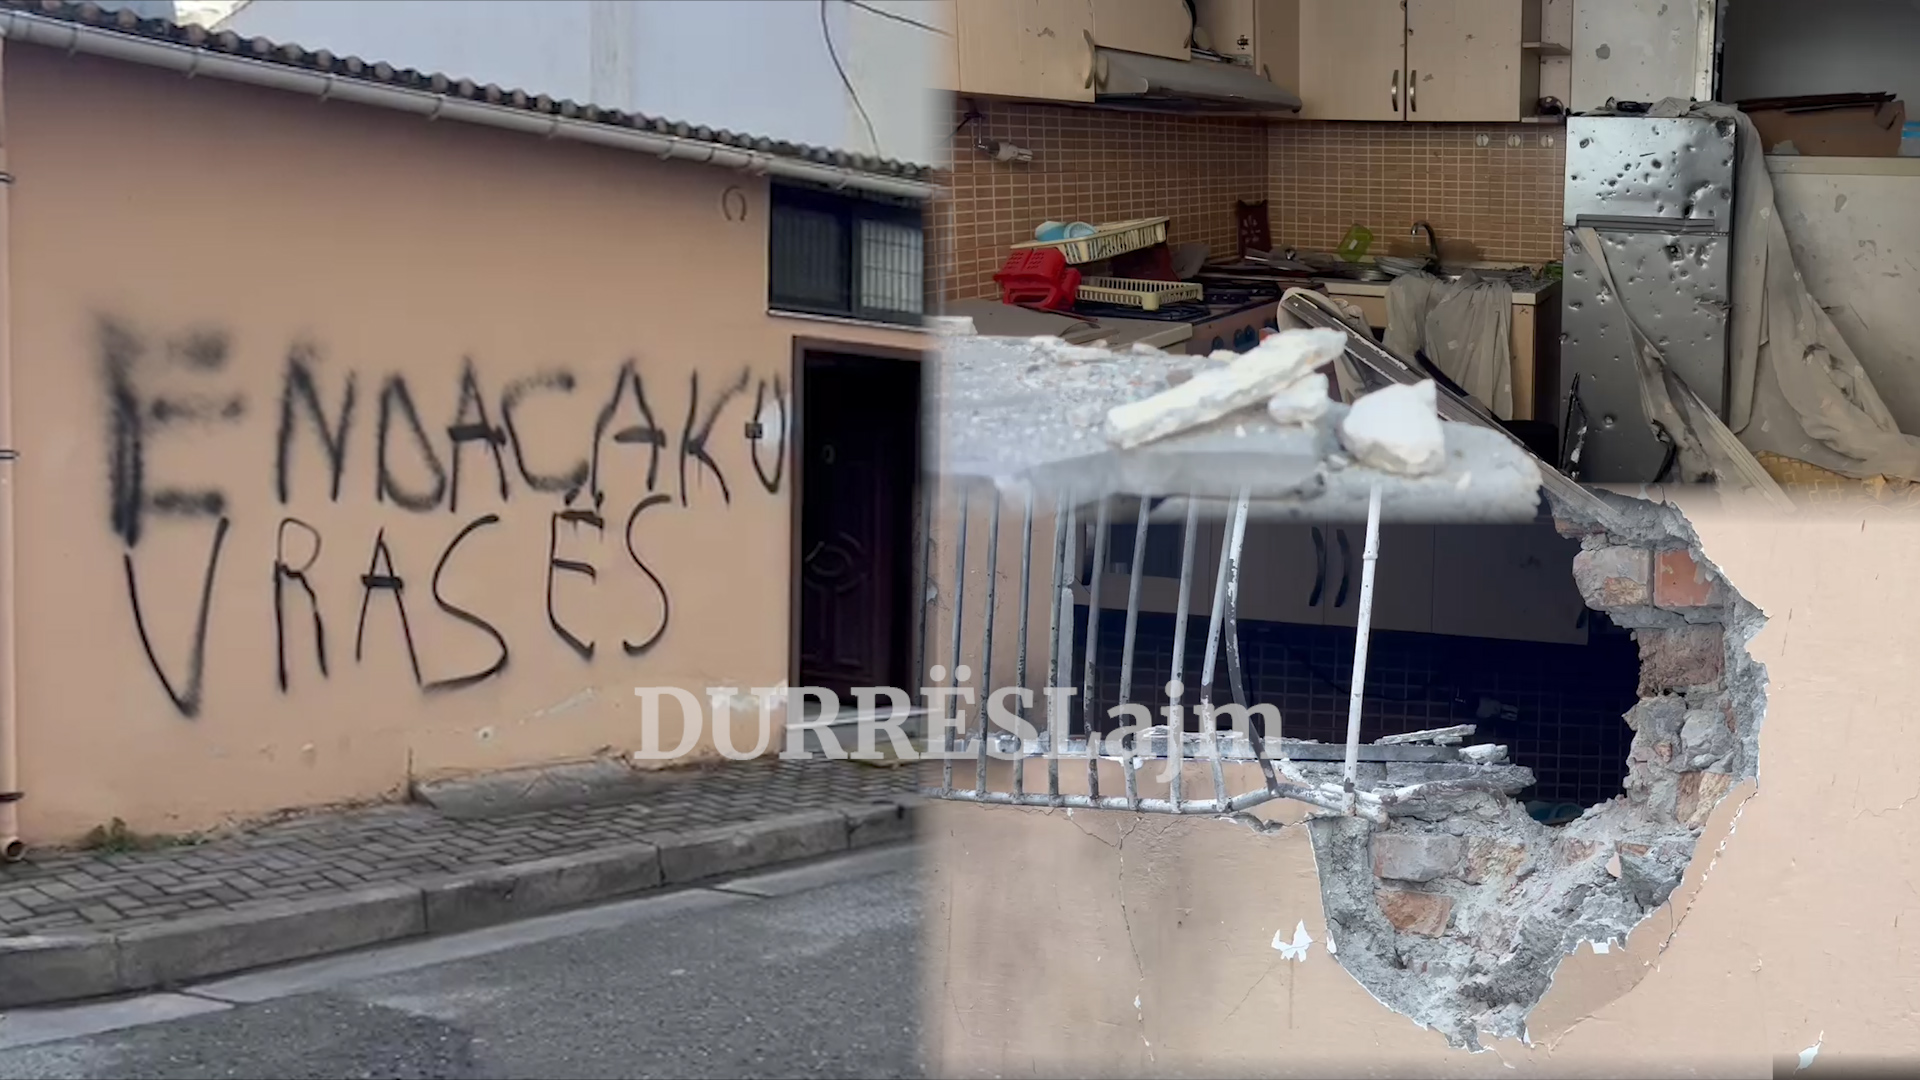 &#8220;Endacaku vrasës!&#8221; Çfarë ka mbetur në shtëpinë e Ilir Koçiljas në Durrës disa orë pas sulmit me tritol (VIDEO)